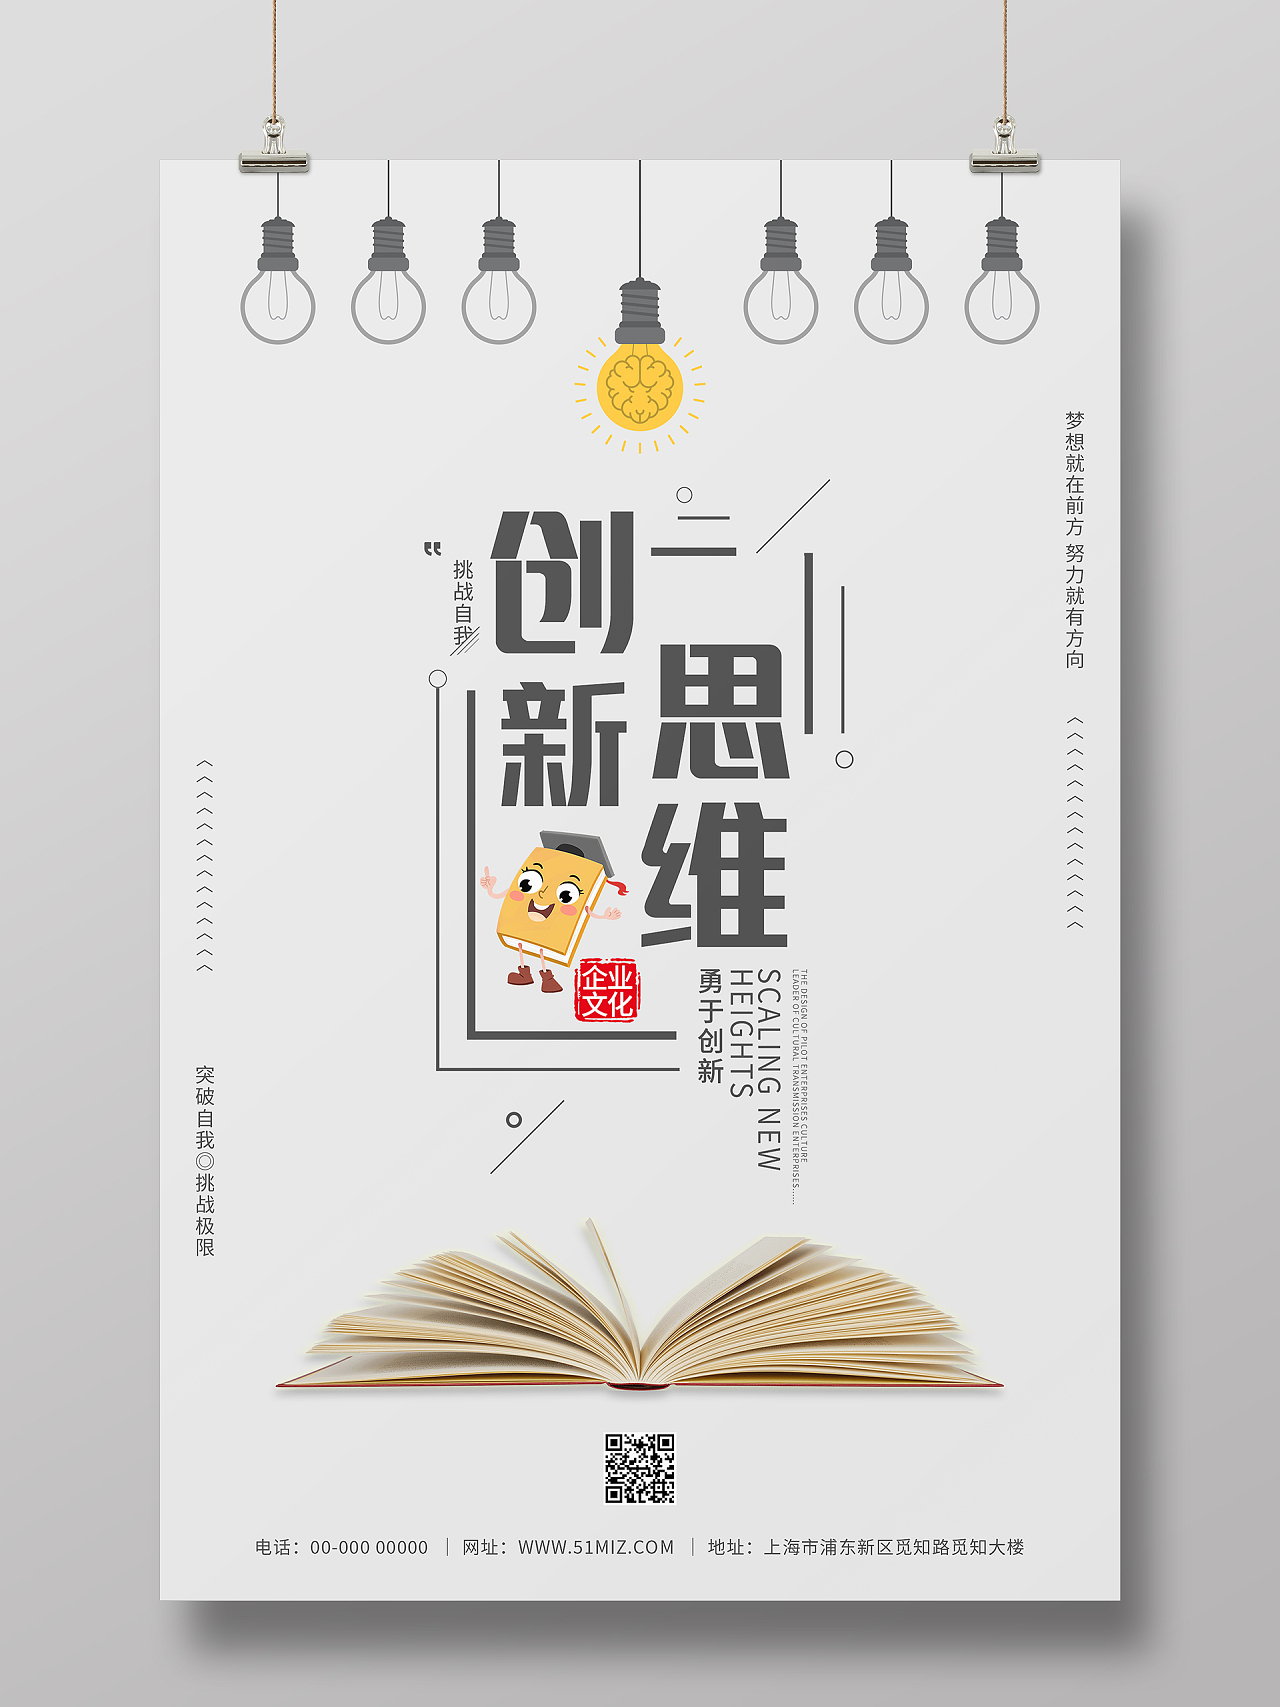 灰色简约清新创意创新思维企业文化励志海报企业文化套图